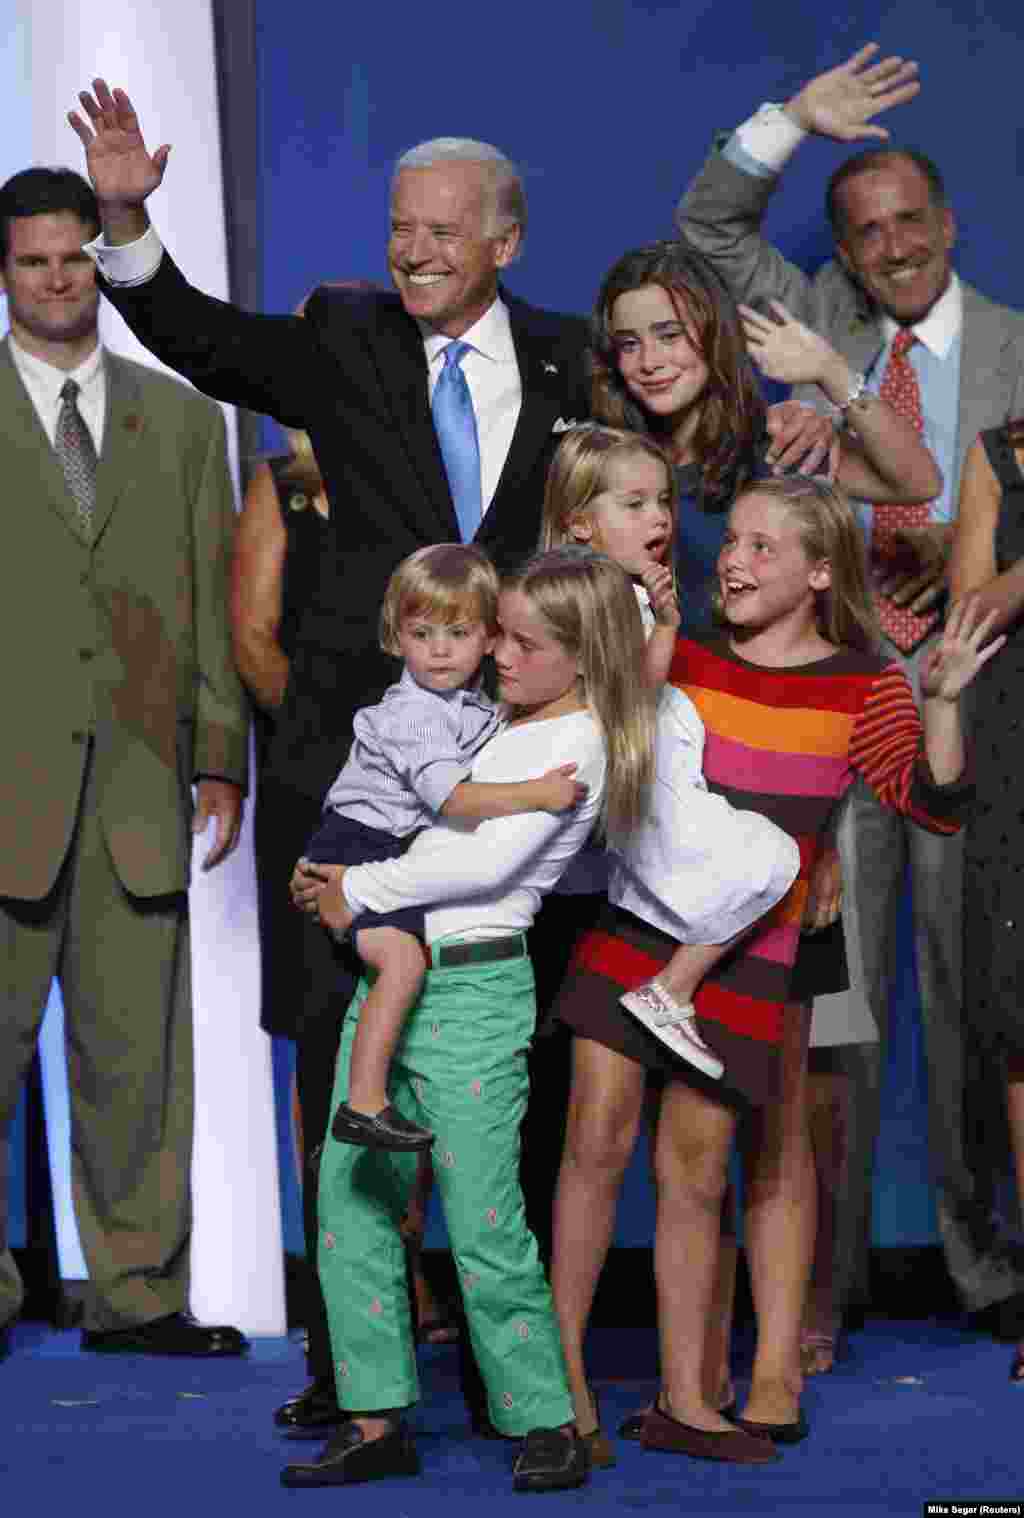 Az akkor demokrata alelnökjelölt Joe Biden öt unokájával körülvéve látható Colorádóban 2008-ban.